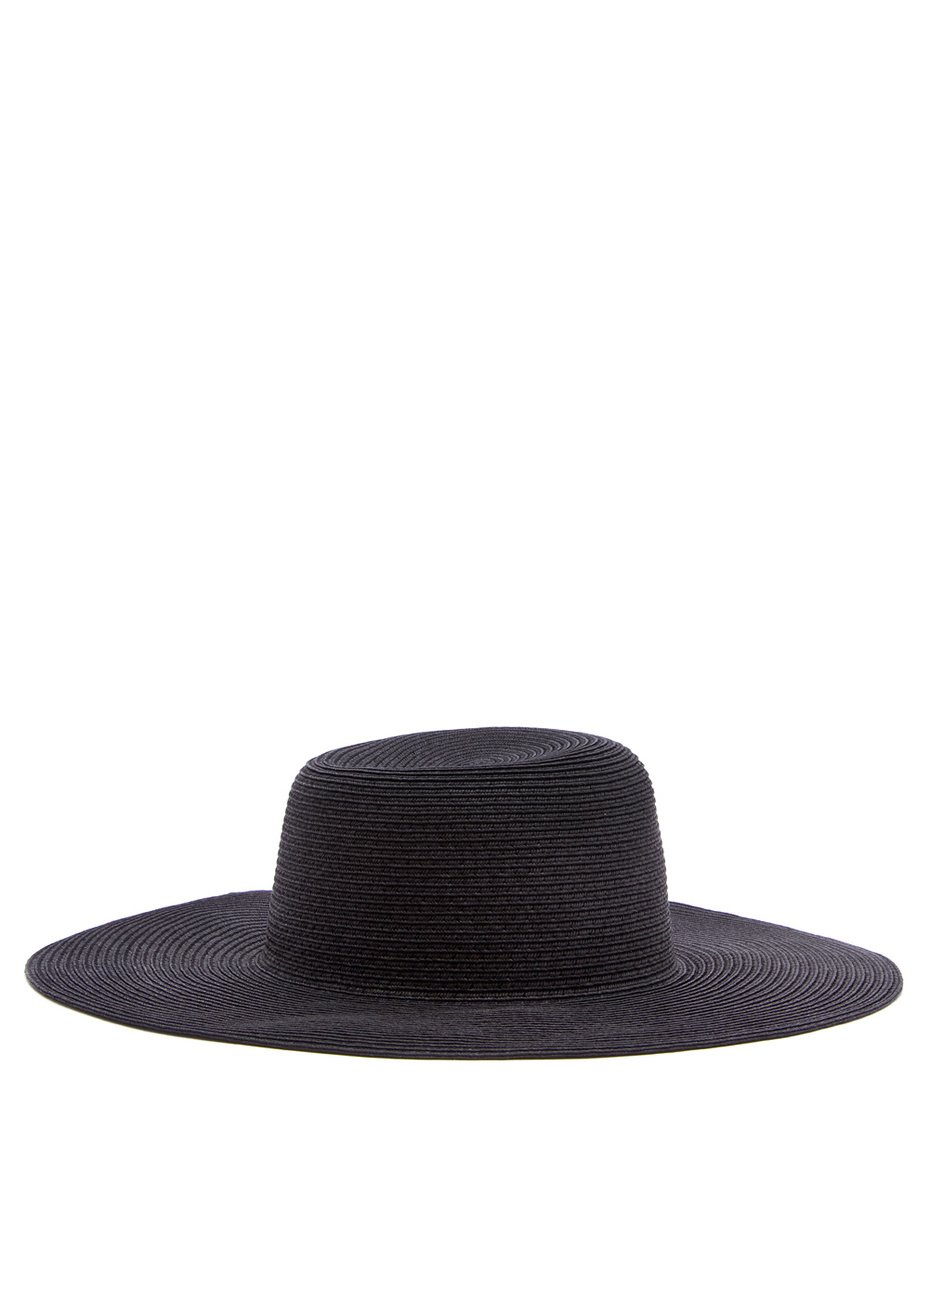 Szalma kalap 5200 forintért az Asostól